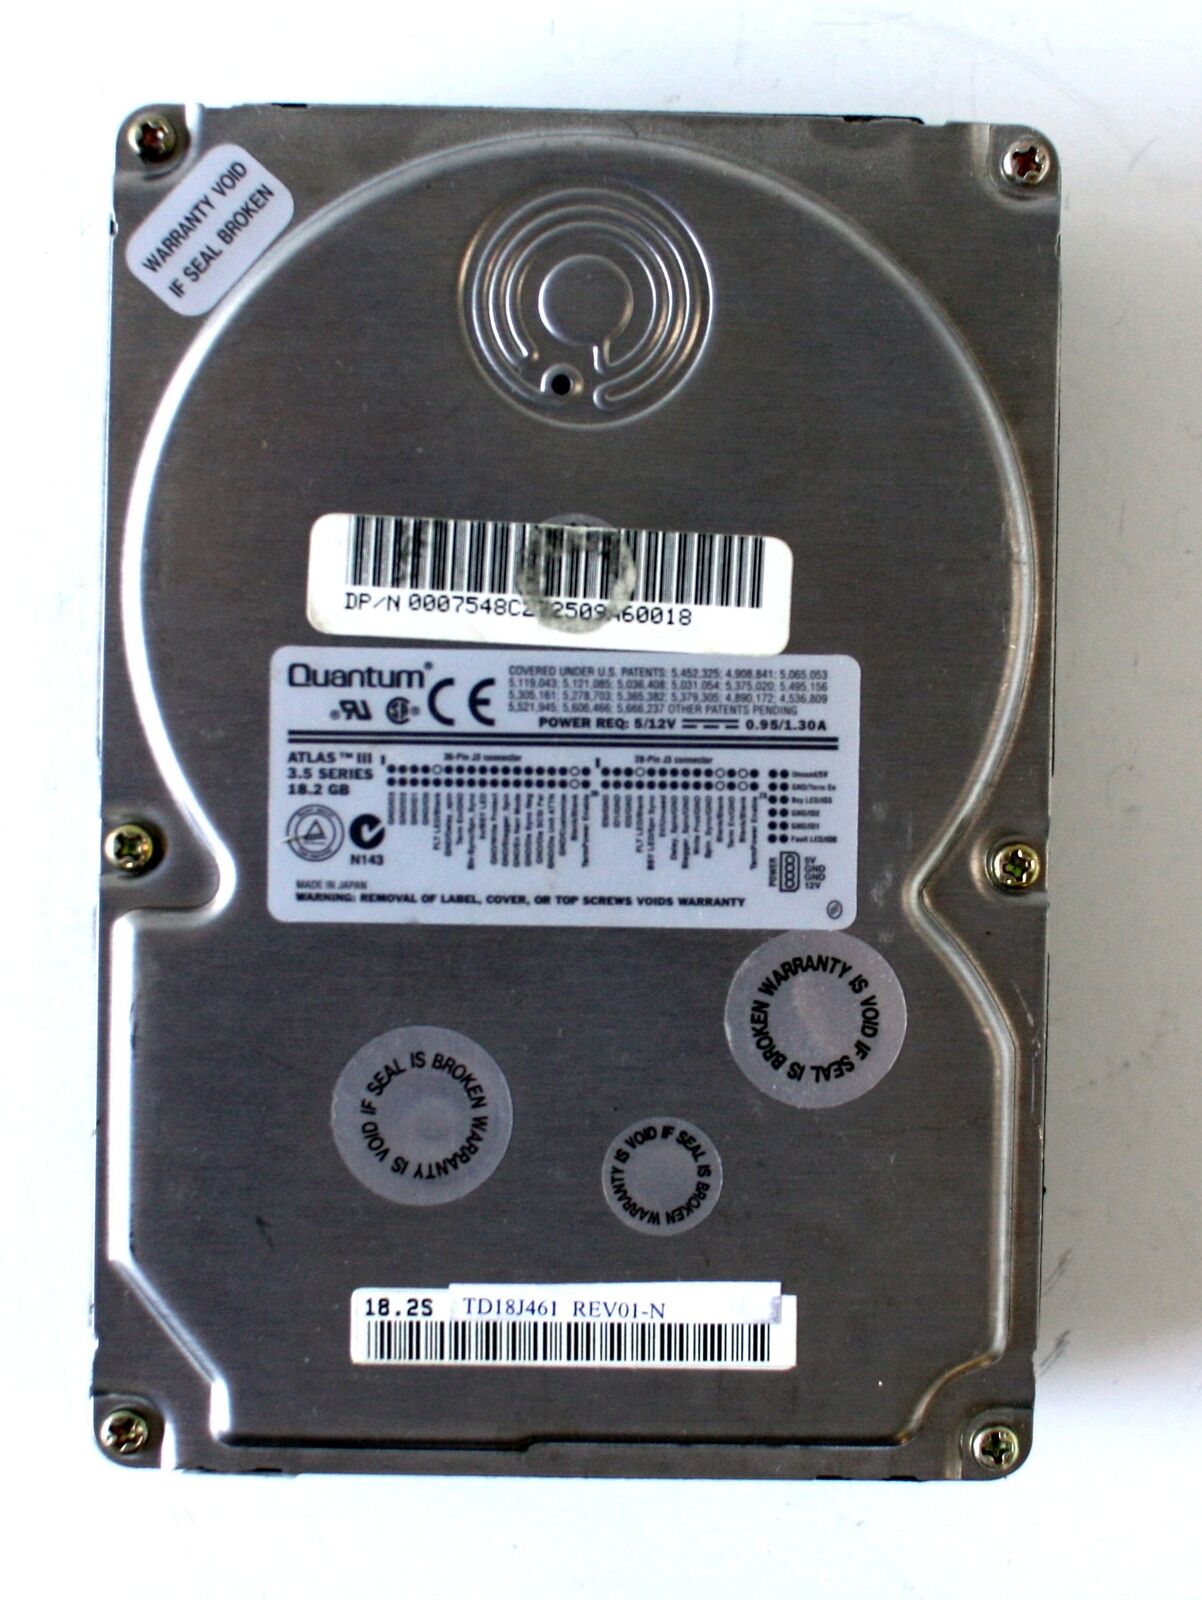 HDD 18.2GB QUANTUM 3.5 SCSI ATLAS III TD18J461, DP/N 0007548C,80 PIN SCSI